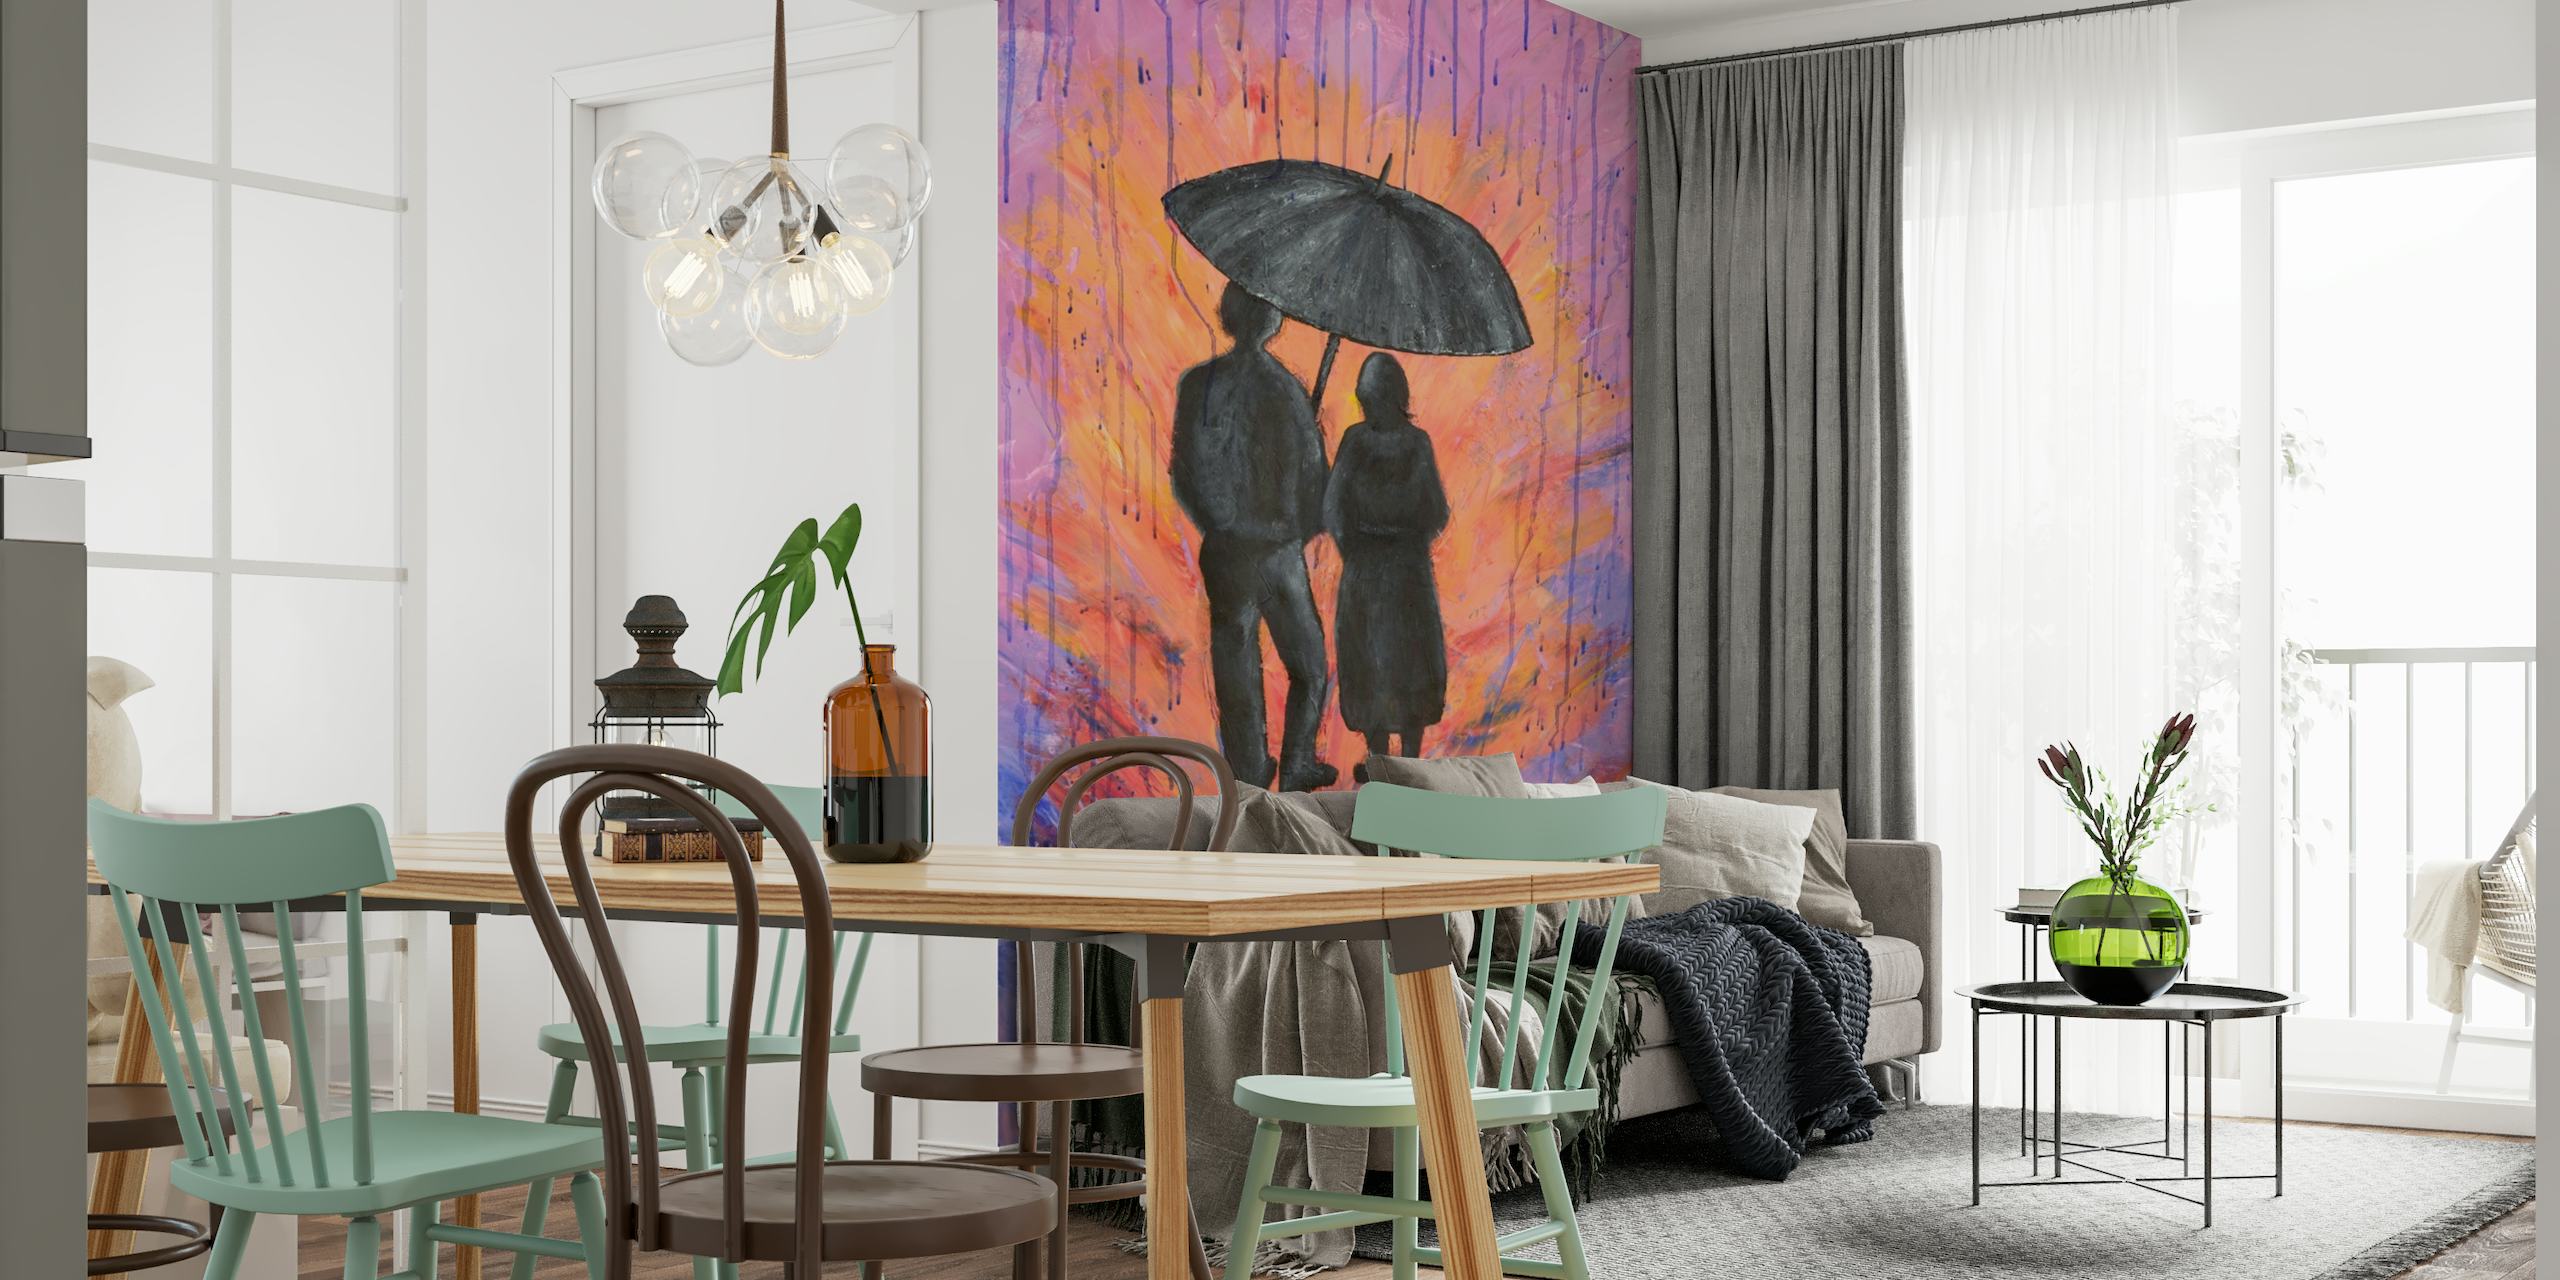 Silueta de una pareja bajo un paraguas con un telón de fondo de tonos ardientes y morados que representan la lluvia